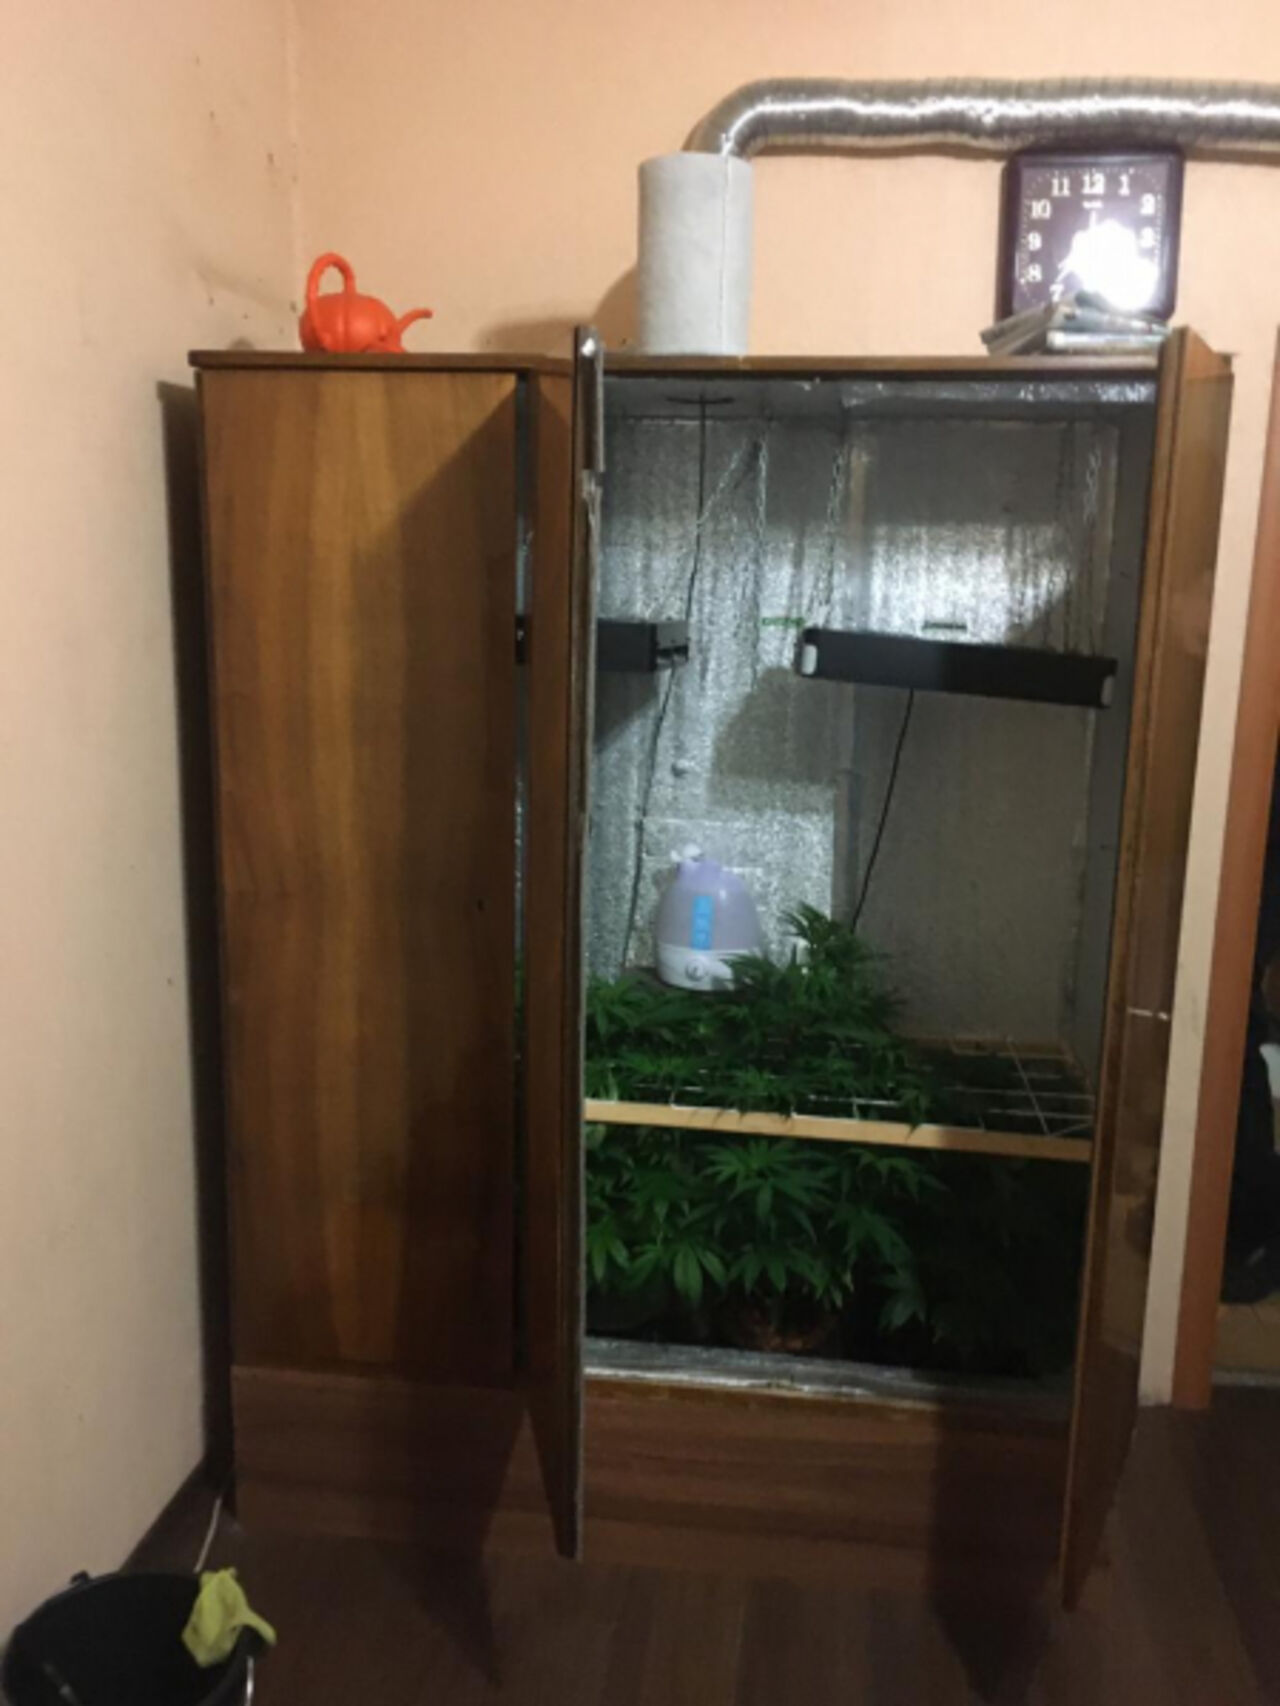 Выращивание марихуаны дома в шкафу tor browser bundle root hydra